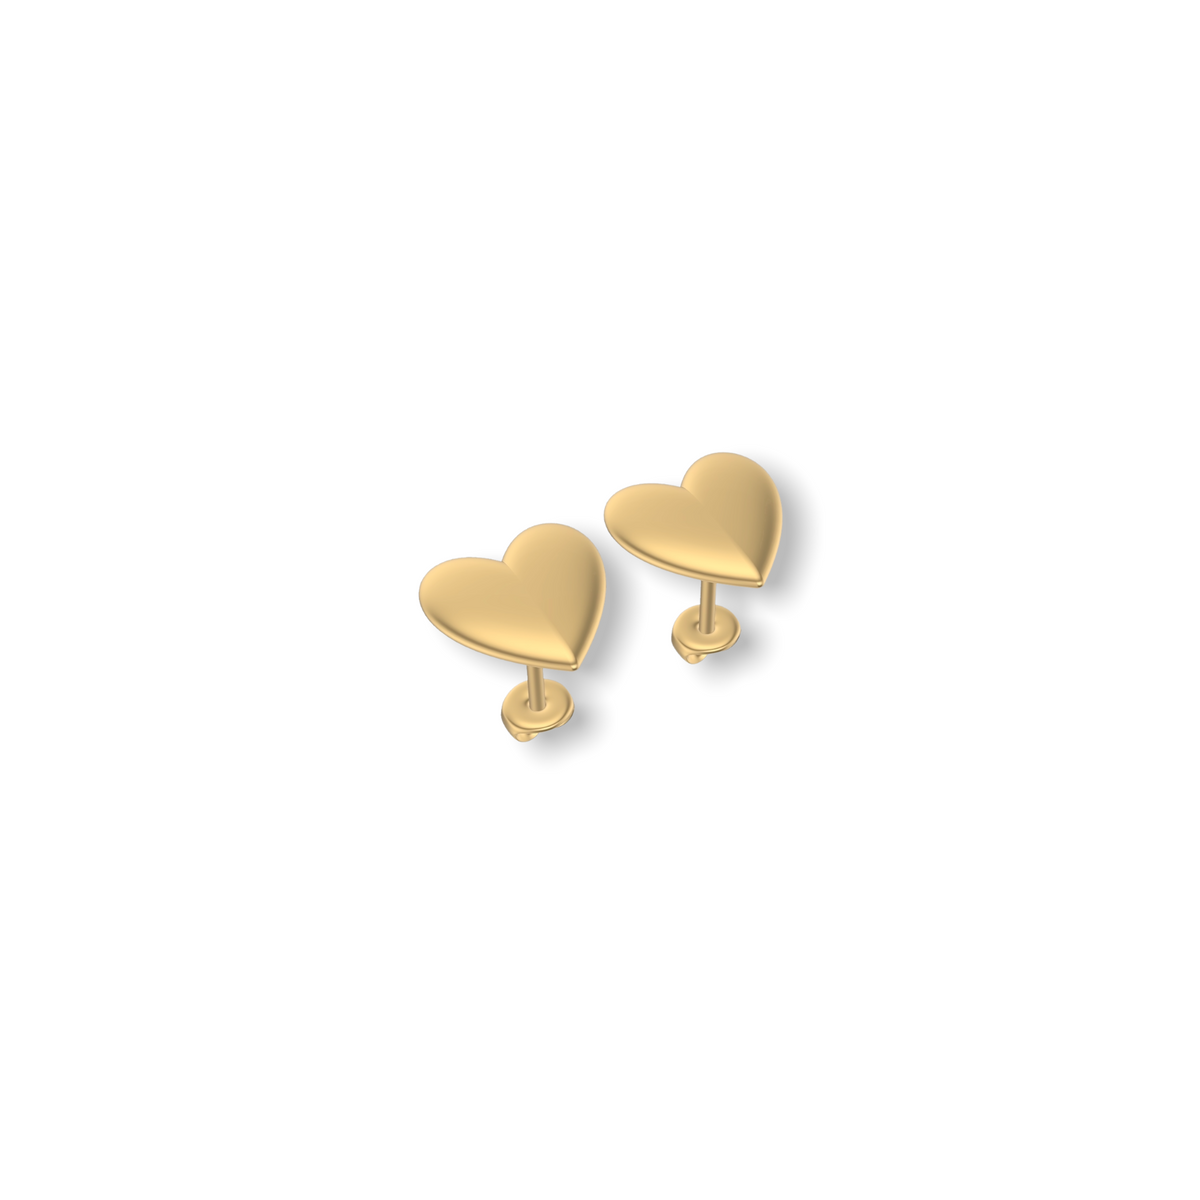 Little Love Heart Earrings  | Gold Studs | Choose Your Metal